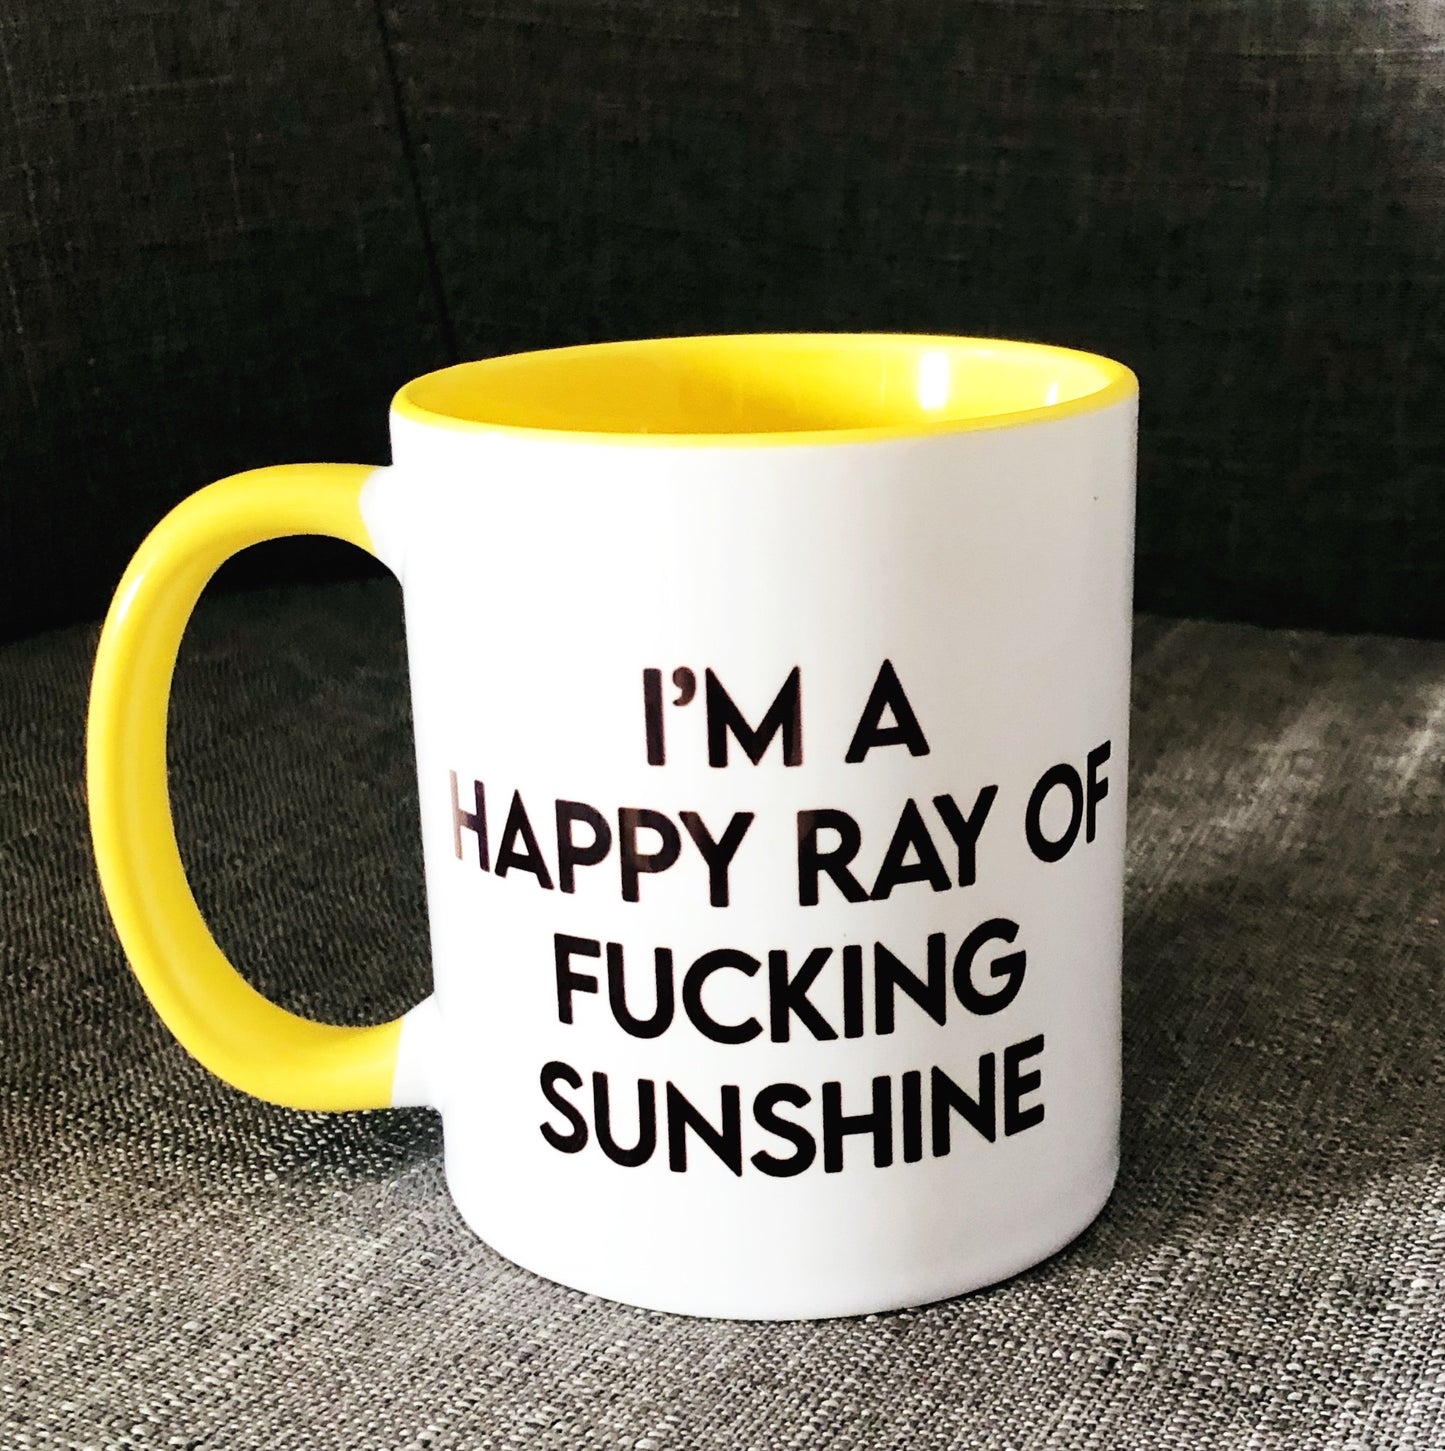 Ray of sunshine mug